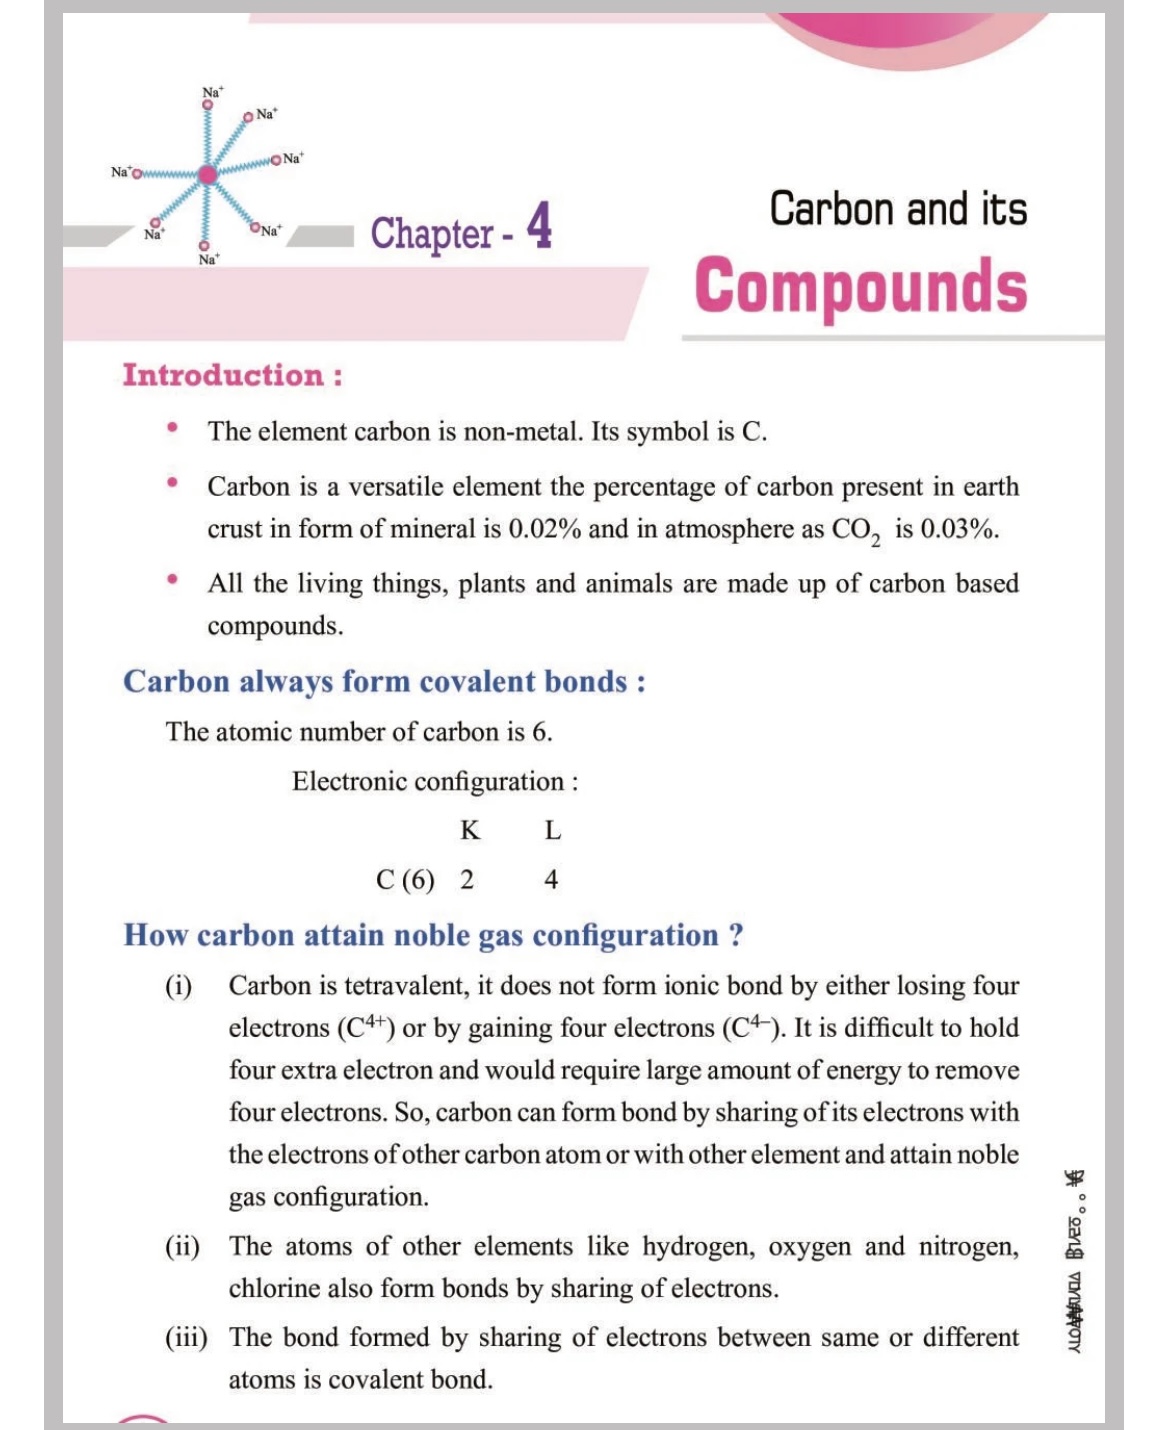 Carbon and its compounds-BA8D7053-3E3E-4FA3-A720-EC7A71BE2A9B.jpeg